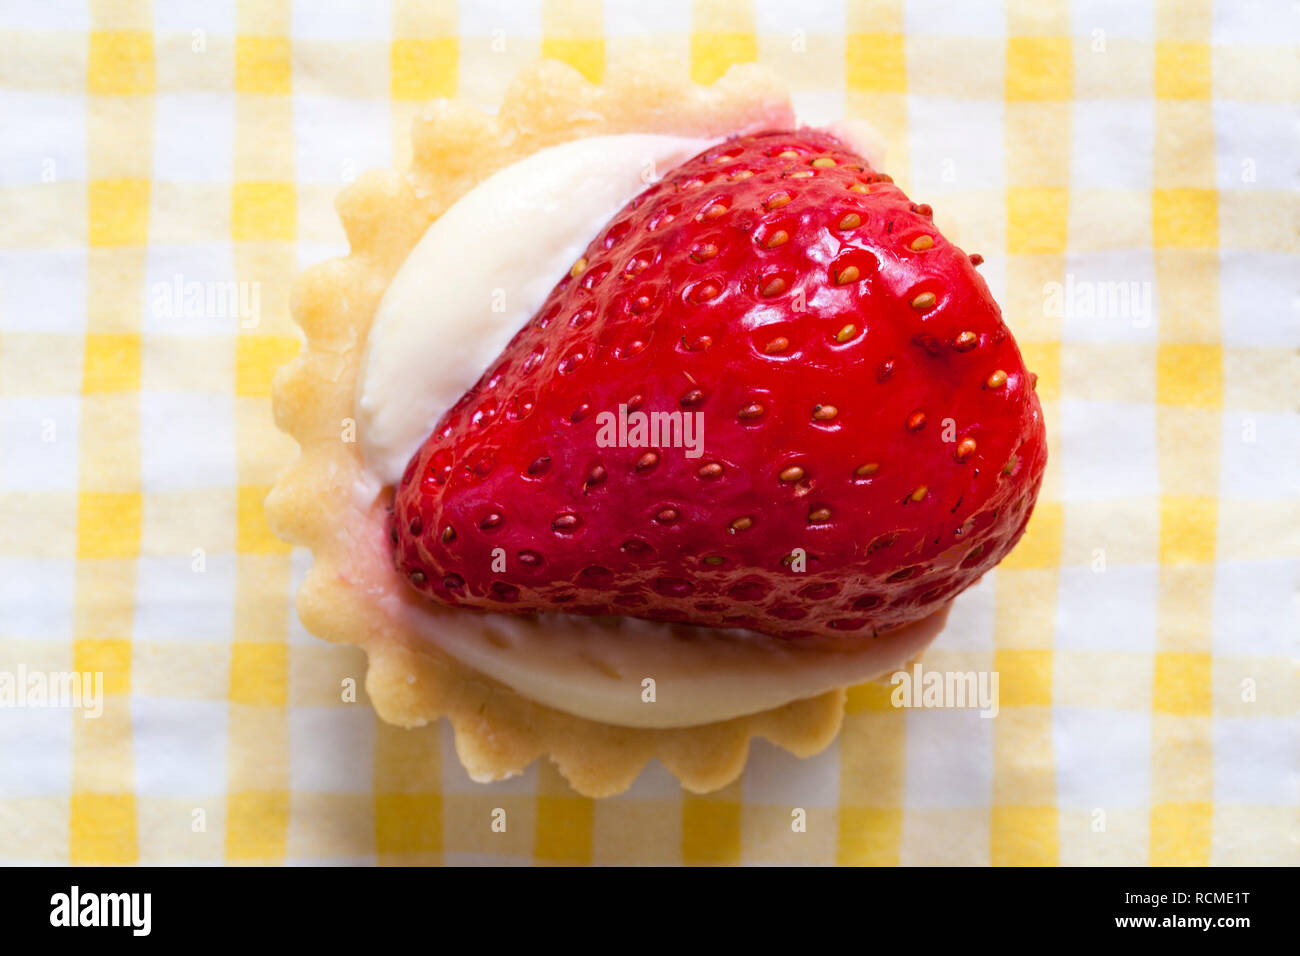 M&S mini jeu de fraises tarte aux fruits avec des carreaux blancs et jaunes sur les ronds de serviette Banque D'Images